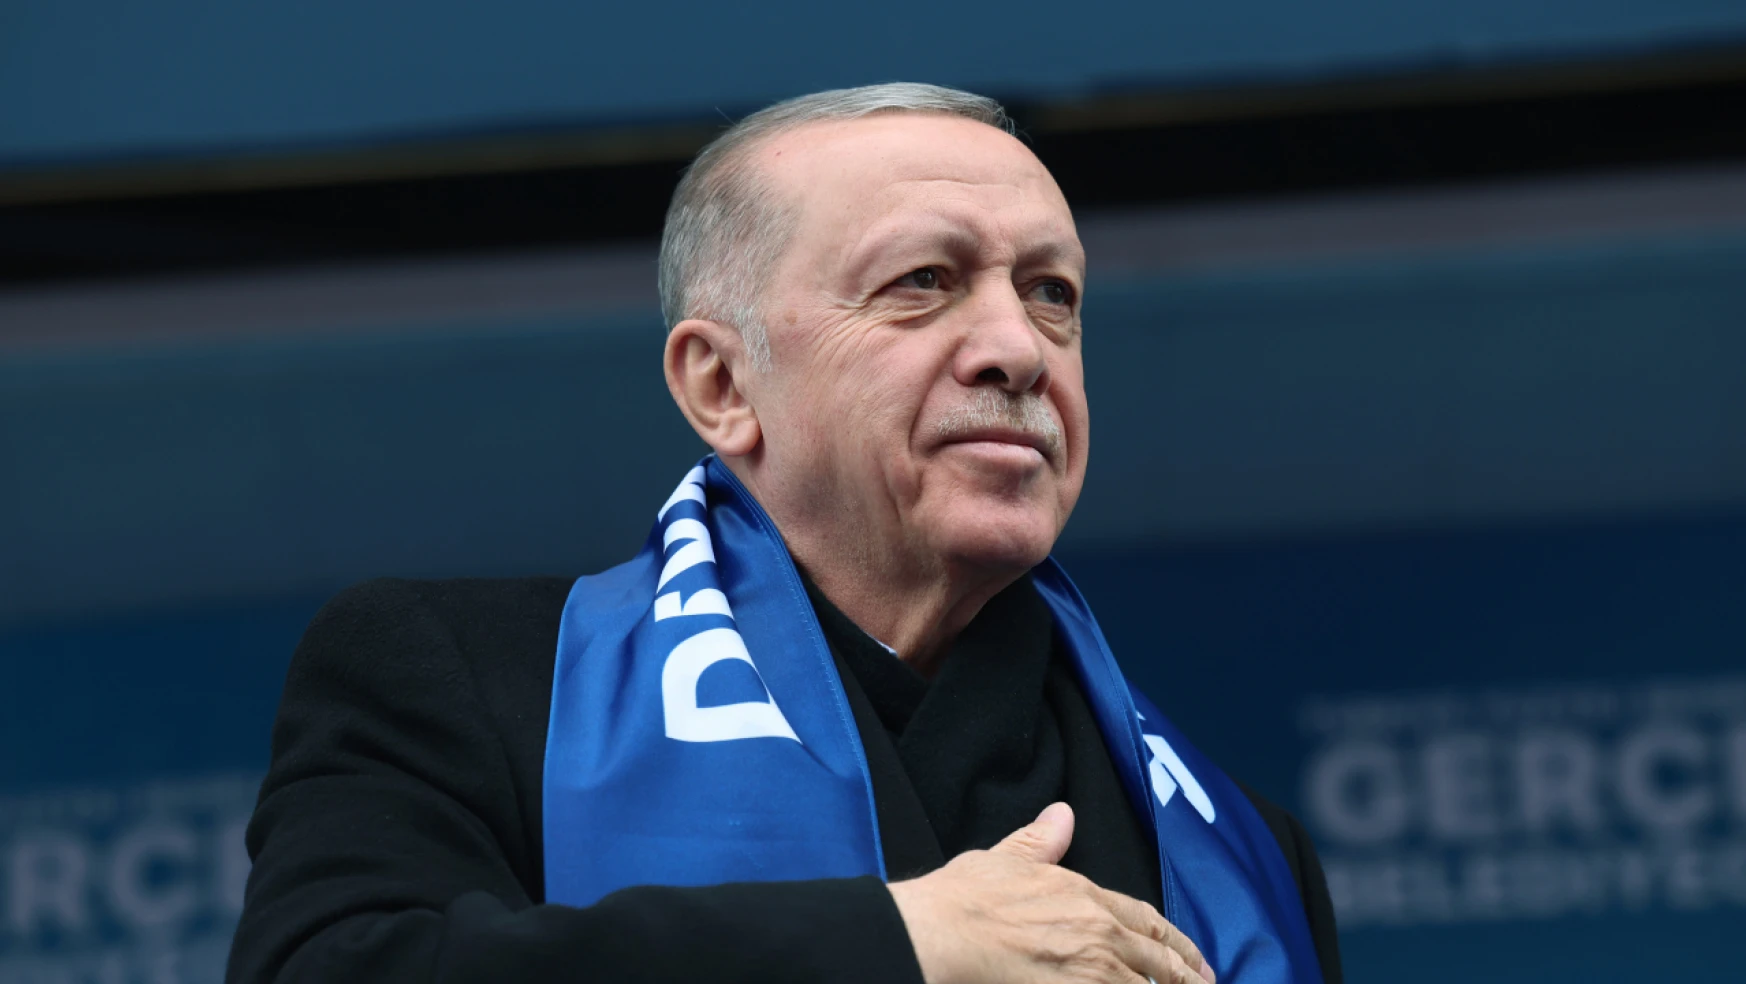 Cumhurbaşkanı Erdoğan'dan emeklilerle ilgili açıklamalar